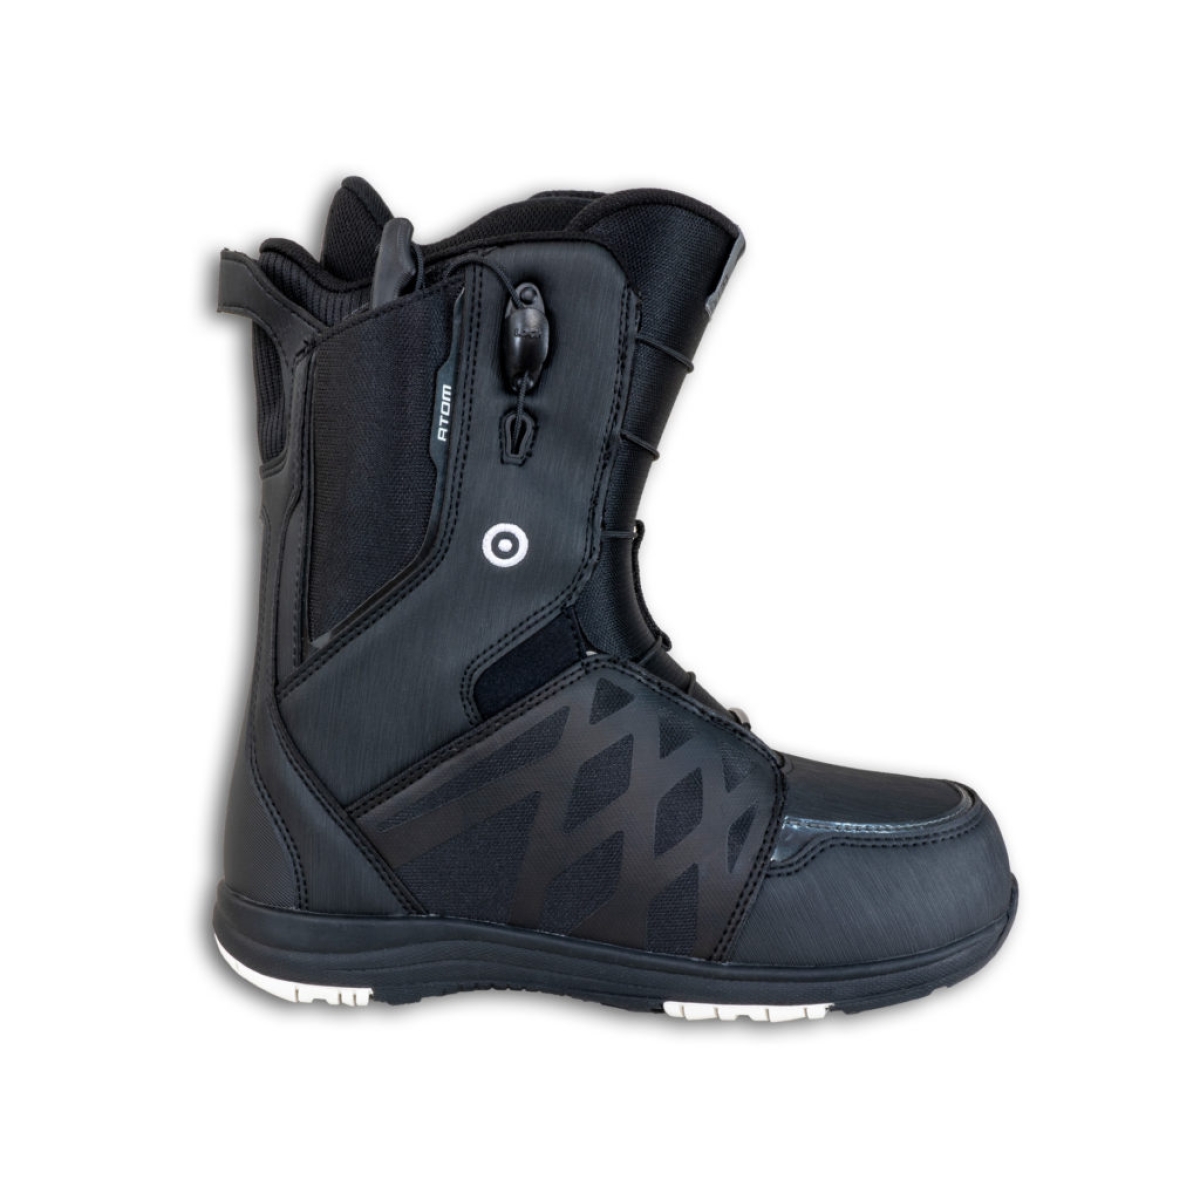 Ботинок для сноуборда Atom Team Black/White, год  2023, размер 40